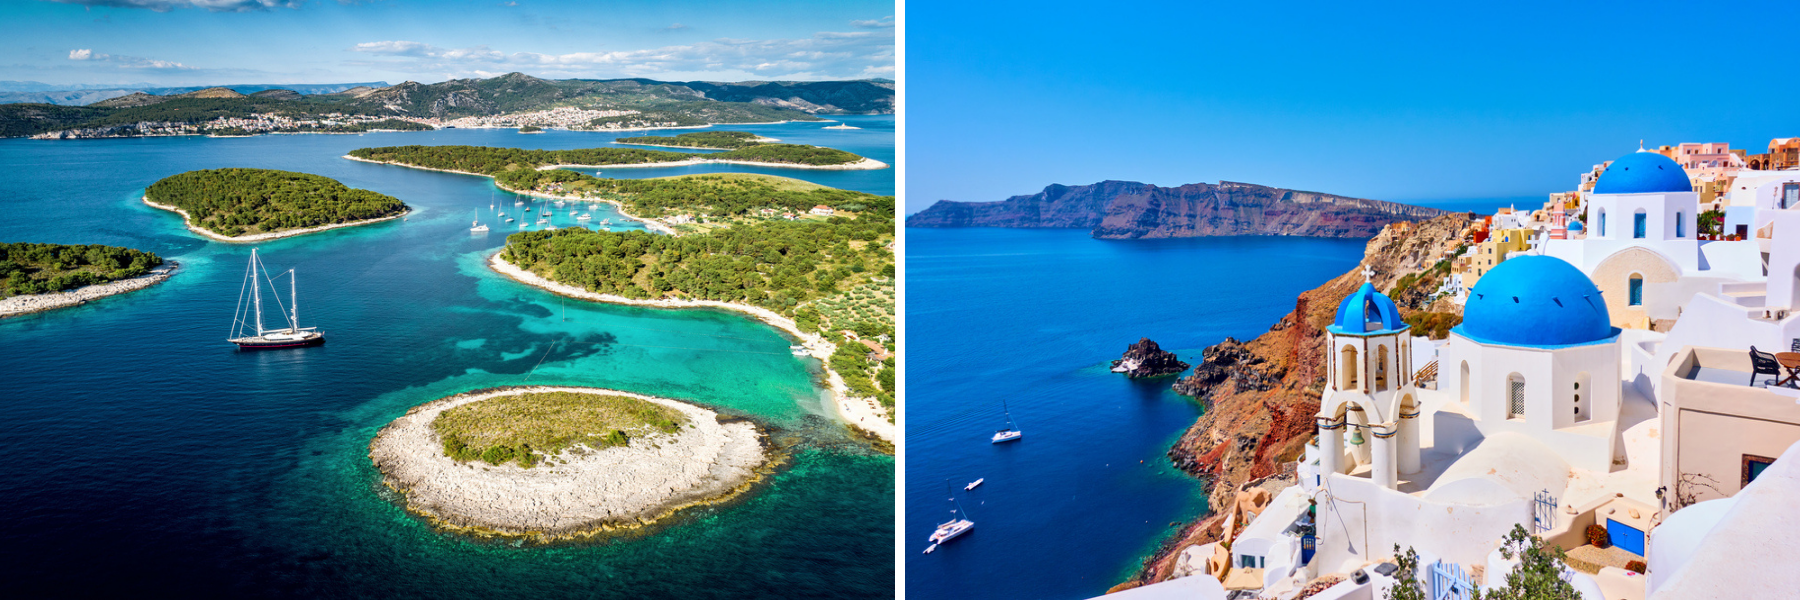 Kroatien och Grekland är ö-länder.